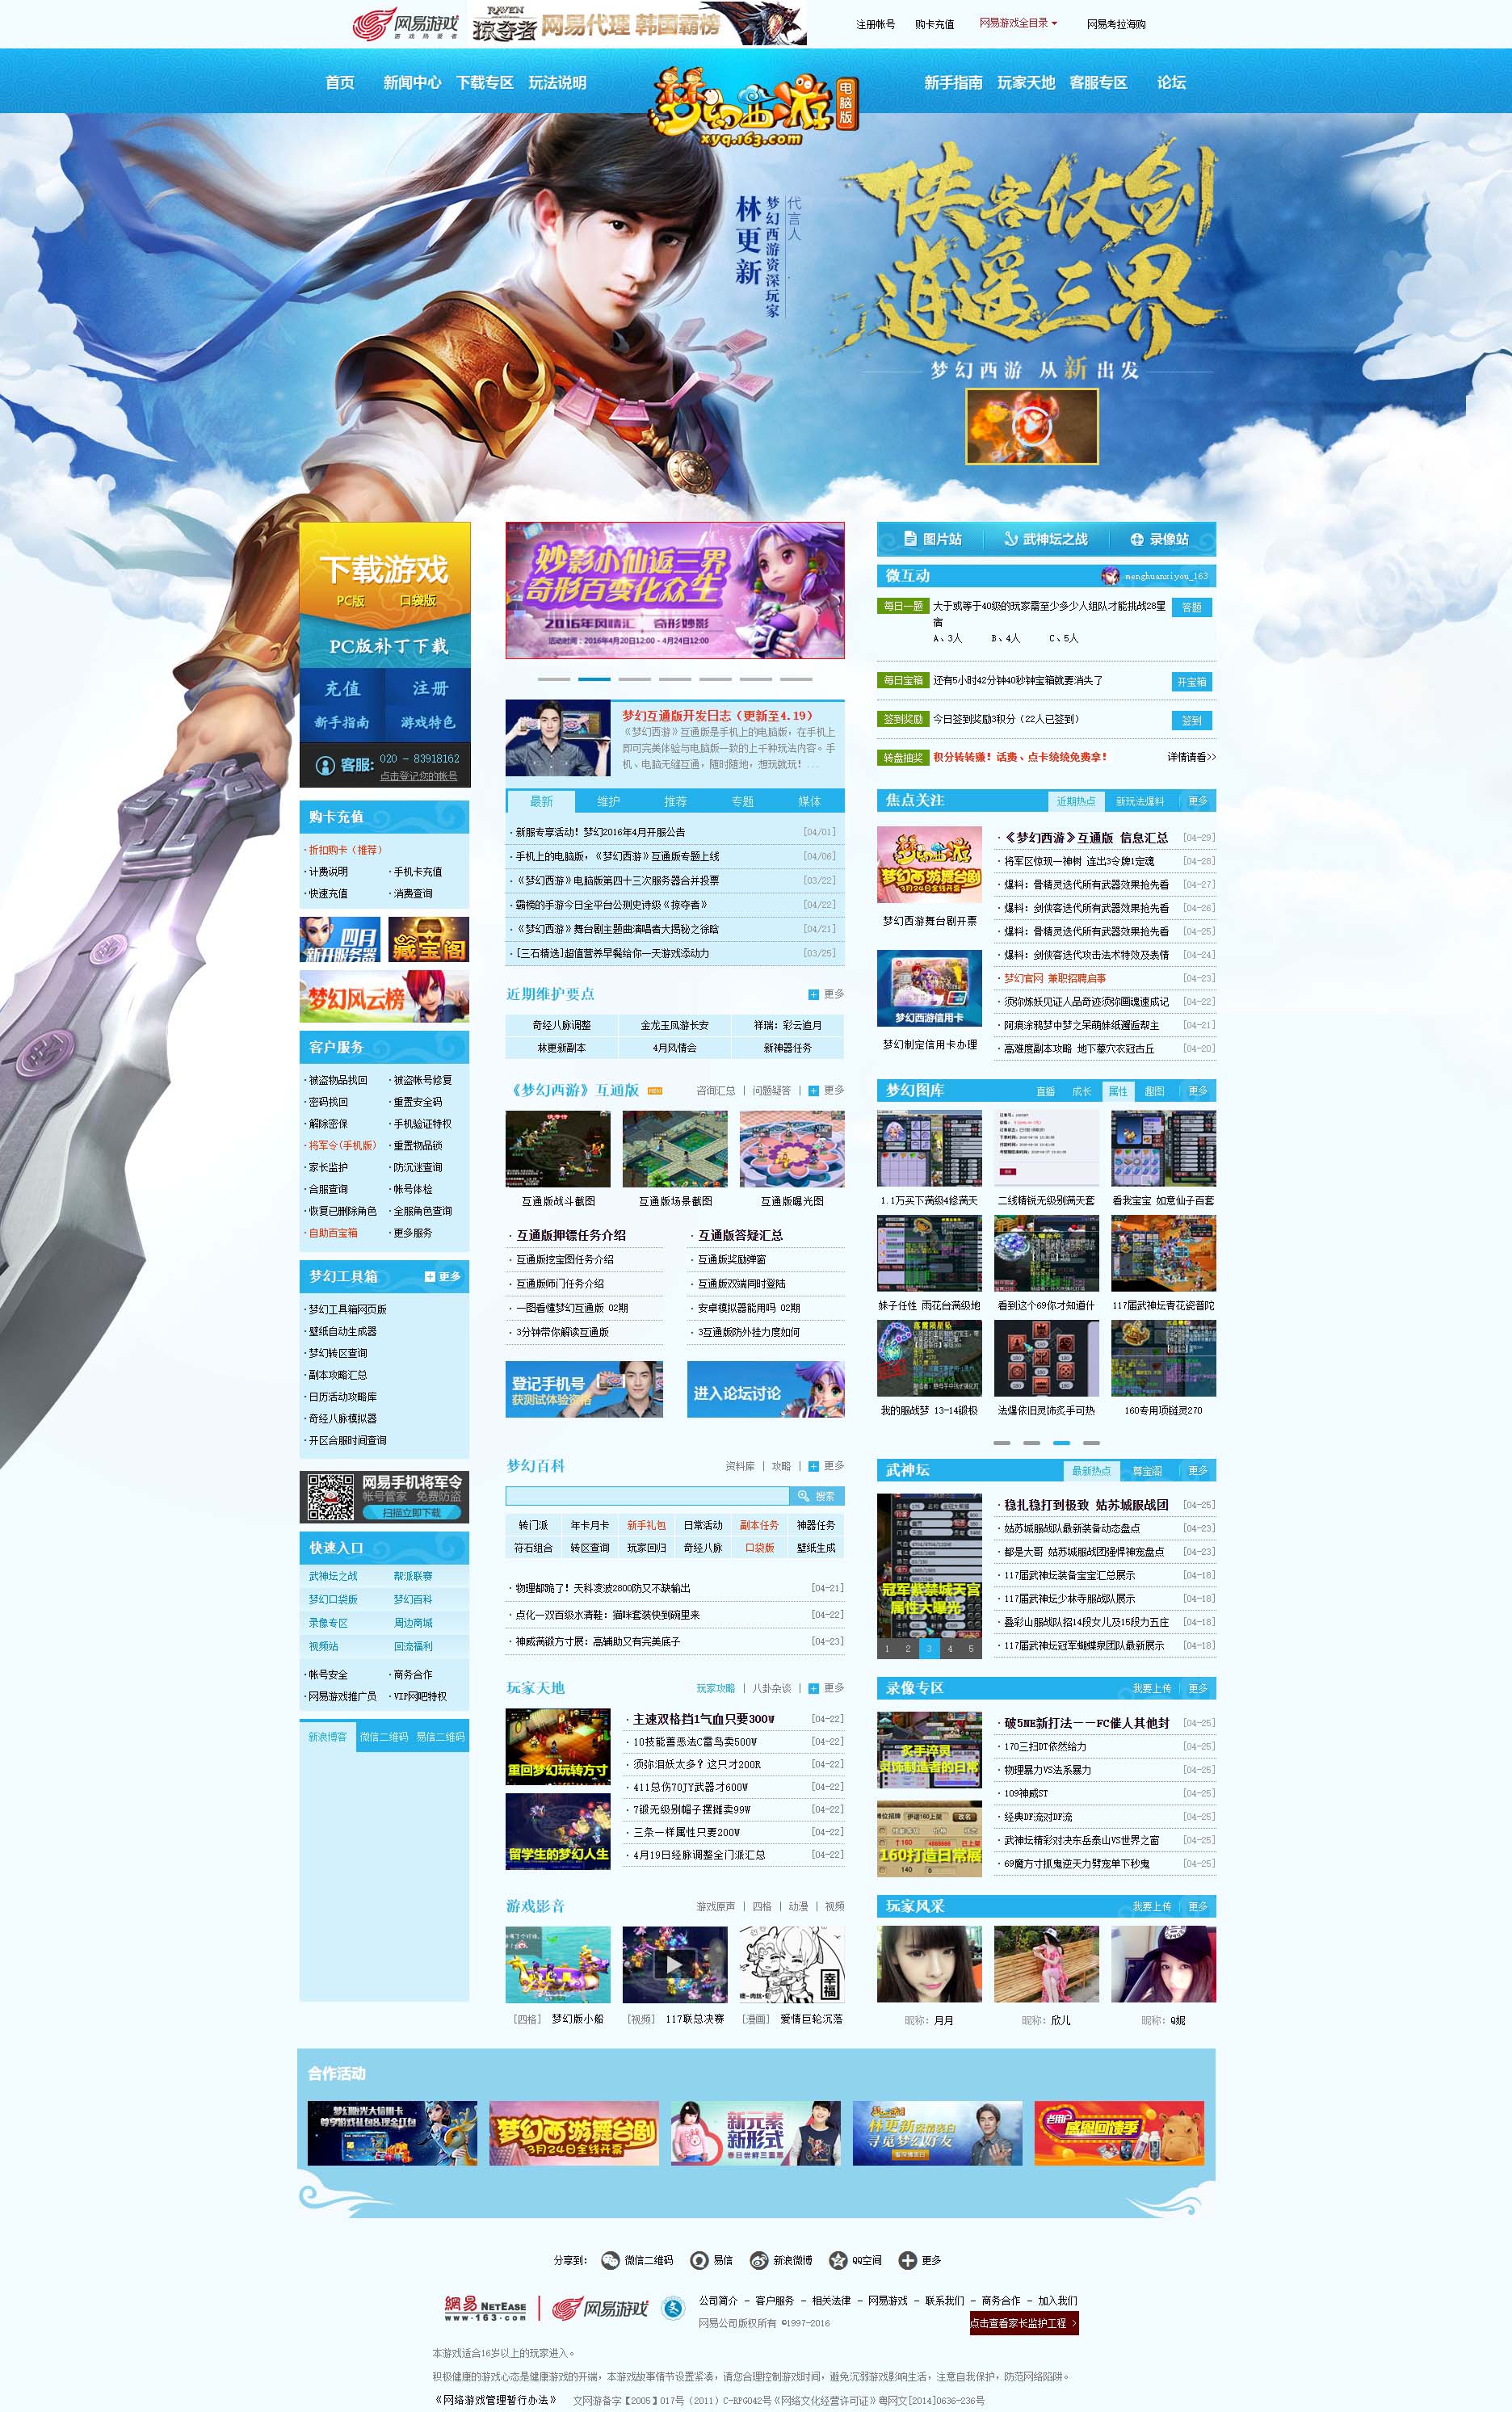 蓝色的梦幻西游游戏官网模板源码下载